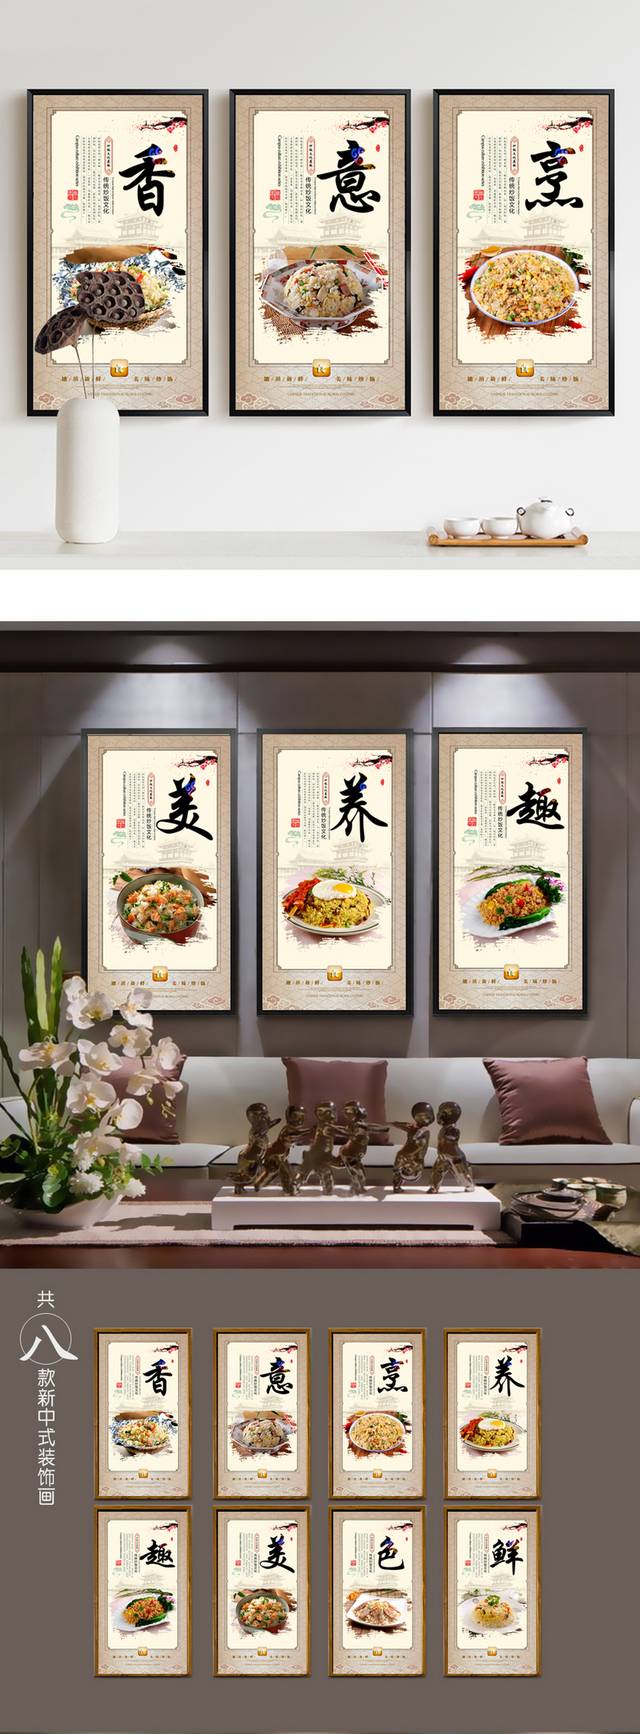 中式古典美味炒饭文化宣传海报展板